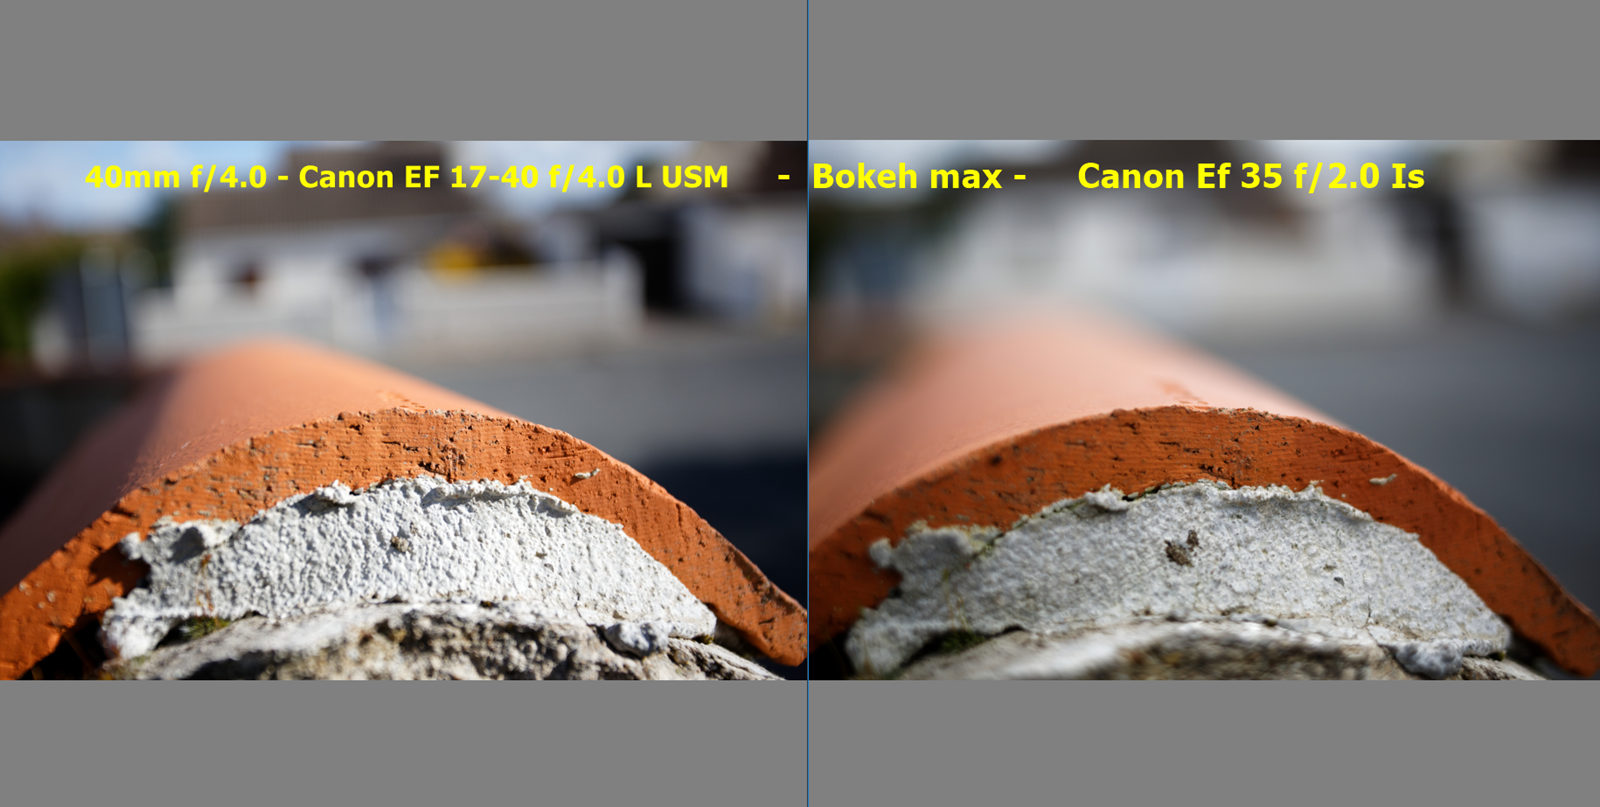 test et avis sur canon 17-40 sur Canon Eos 5D mark III - beanico-photo.fr